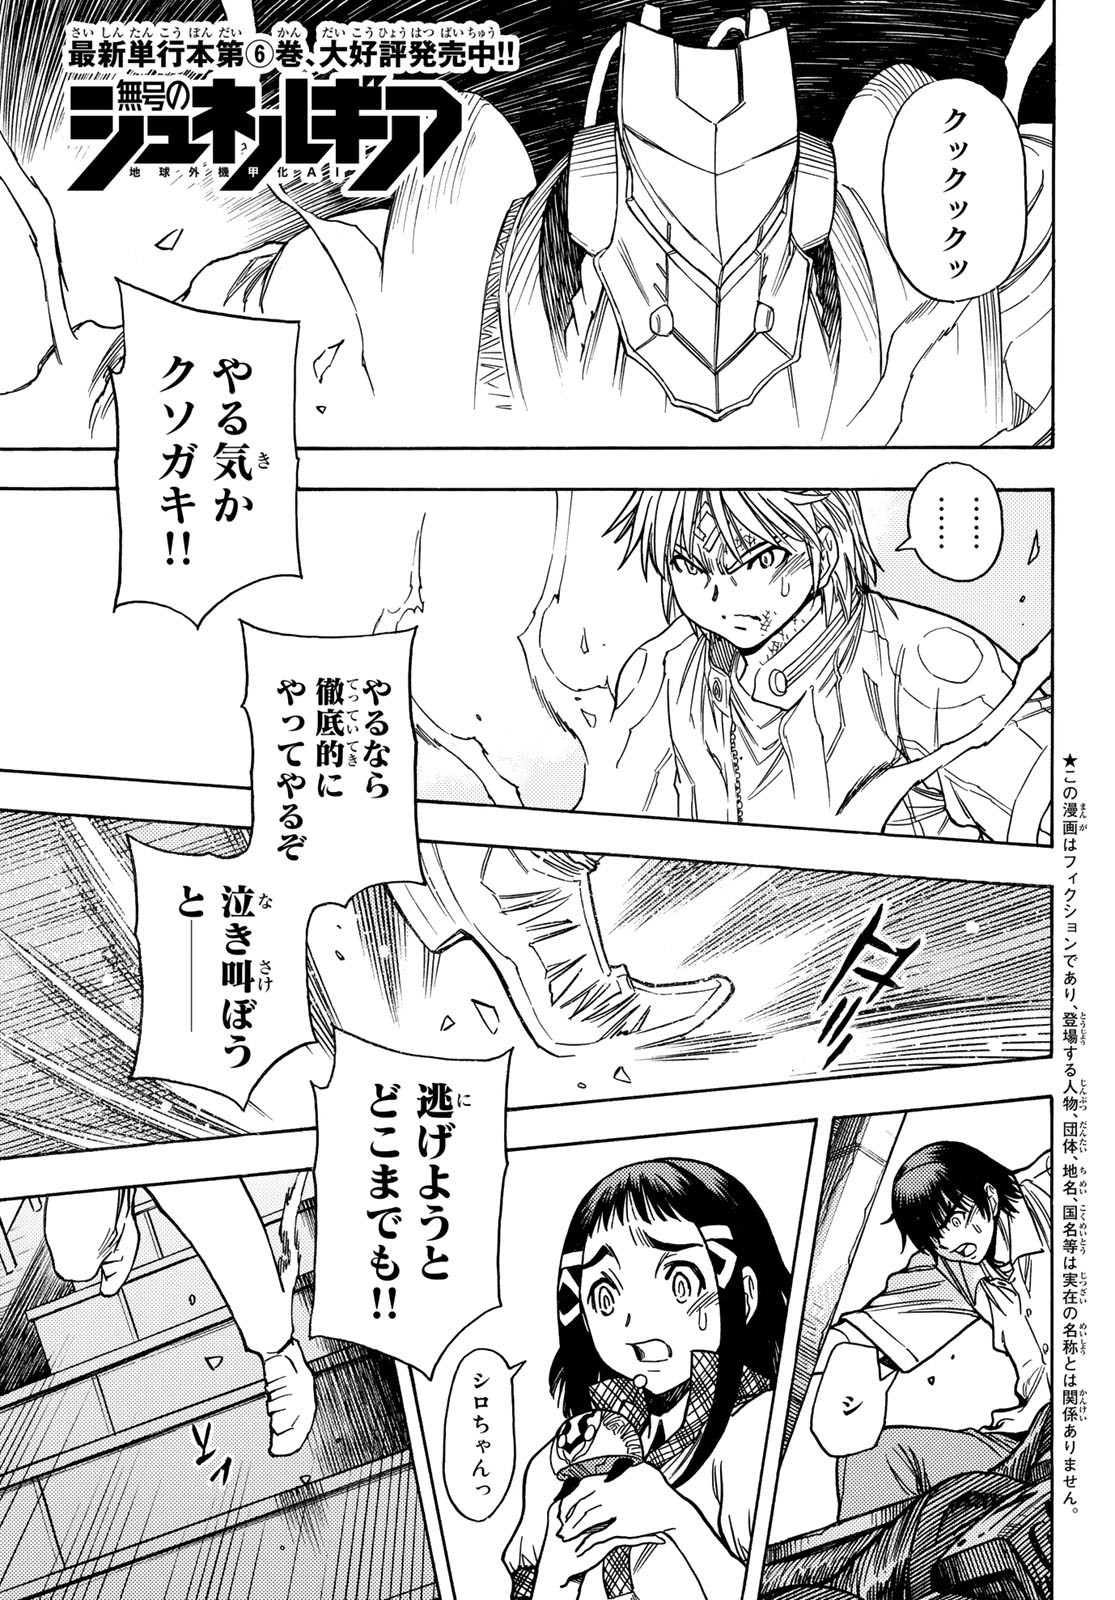 Mugou no Schnell Gear: Chikyuugai Kisouka AI - Chapter 39 - Page 1